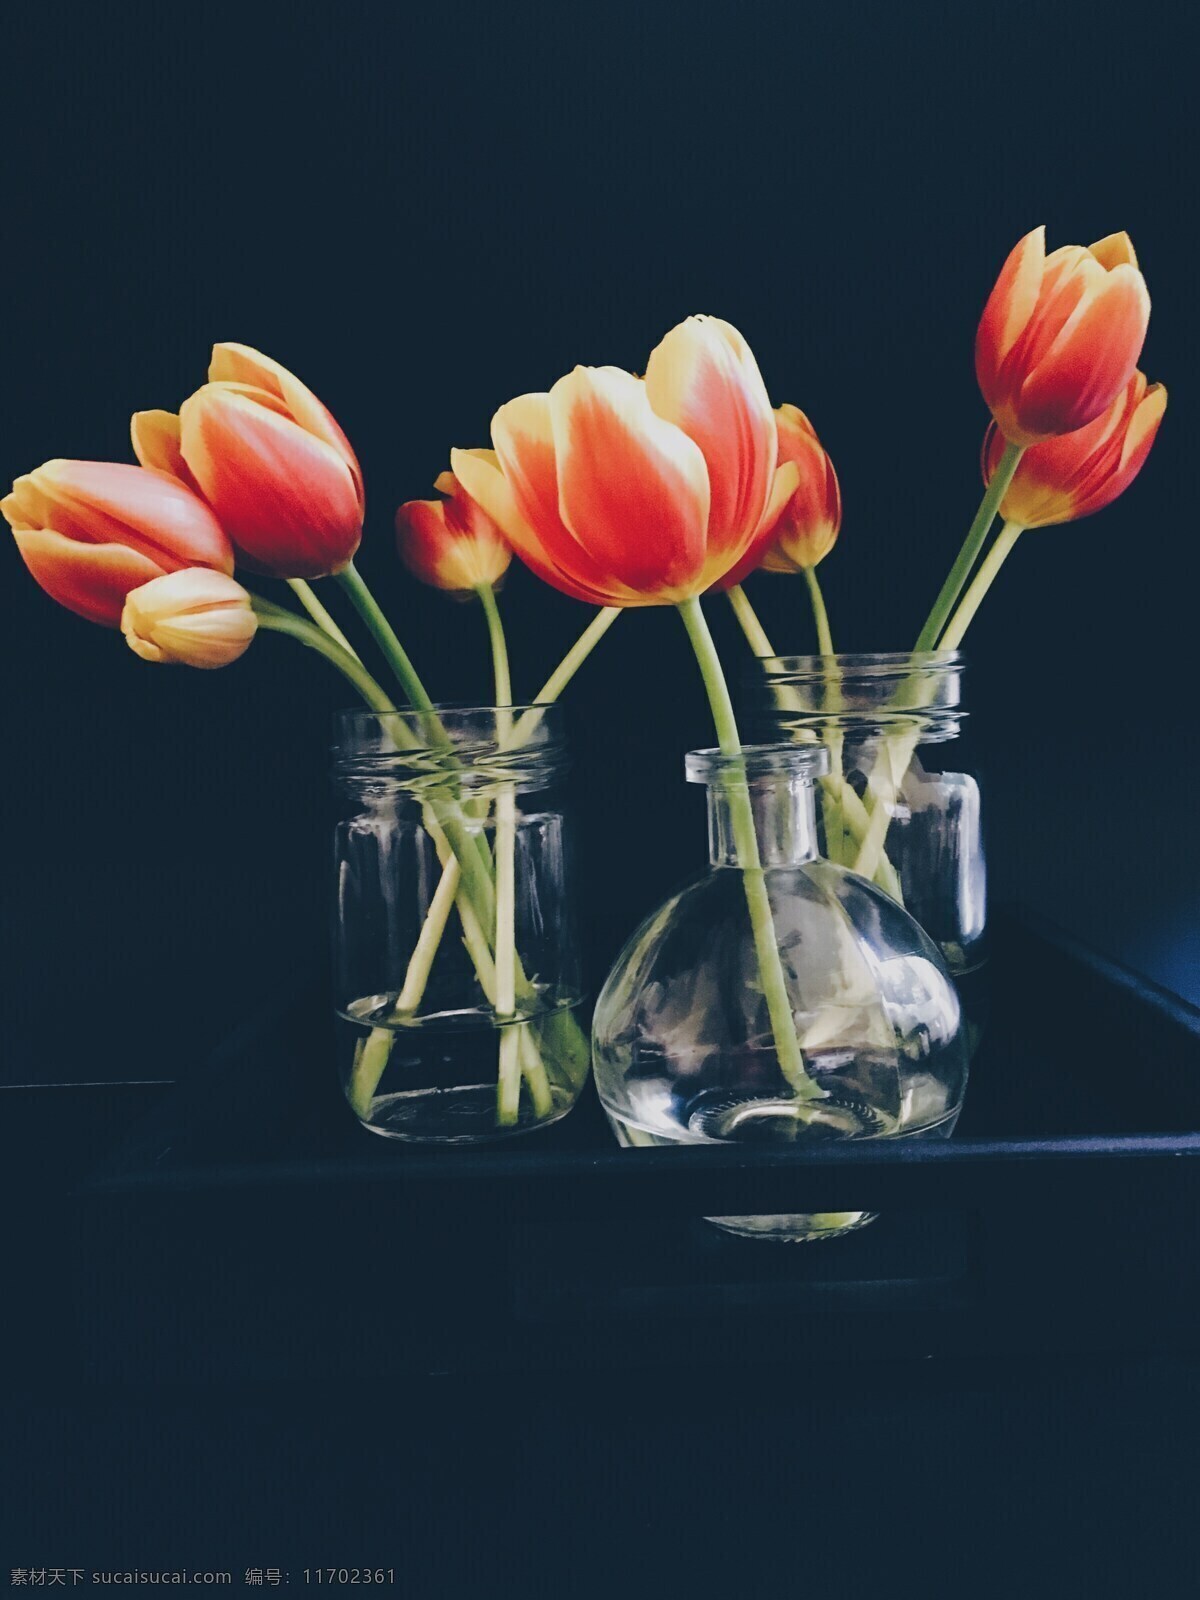 花瓶 摆件 装饰品 器皿 鲜花 花卉 生活百科 生活素材